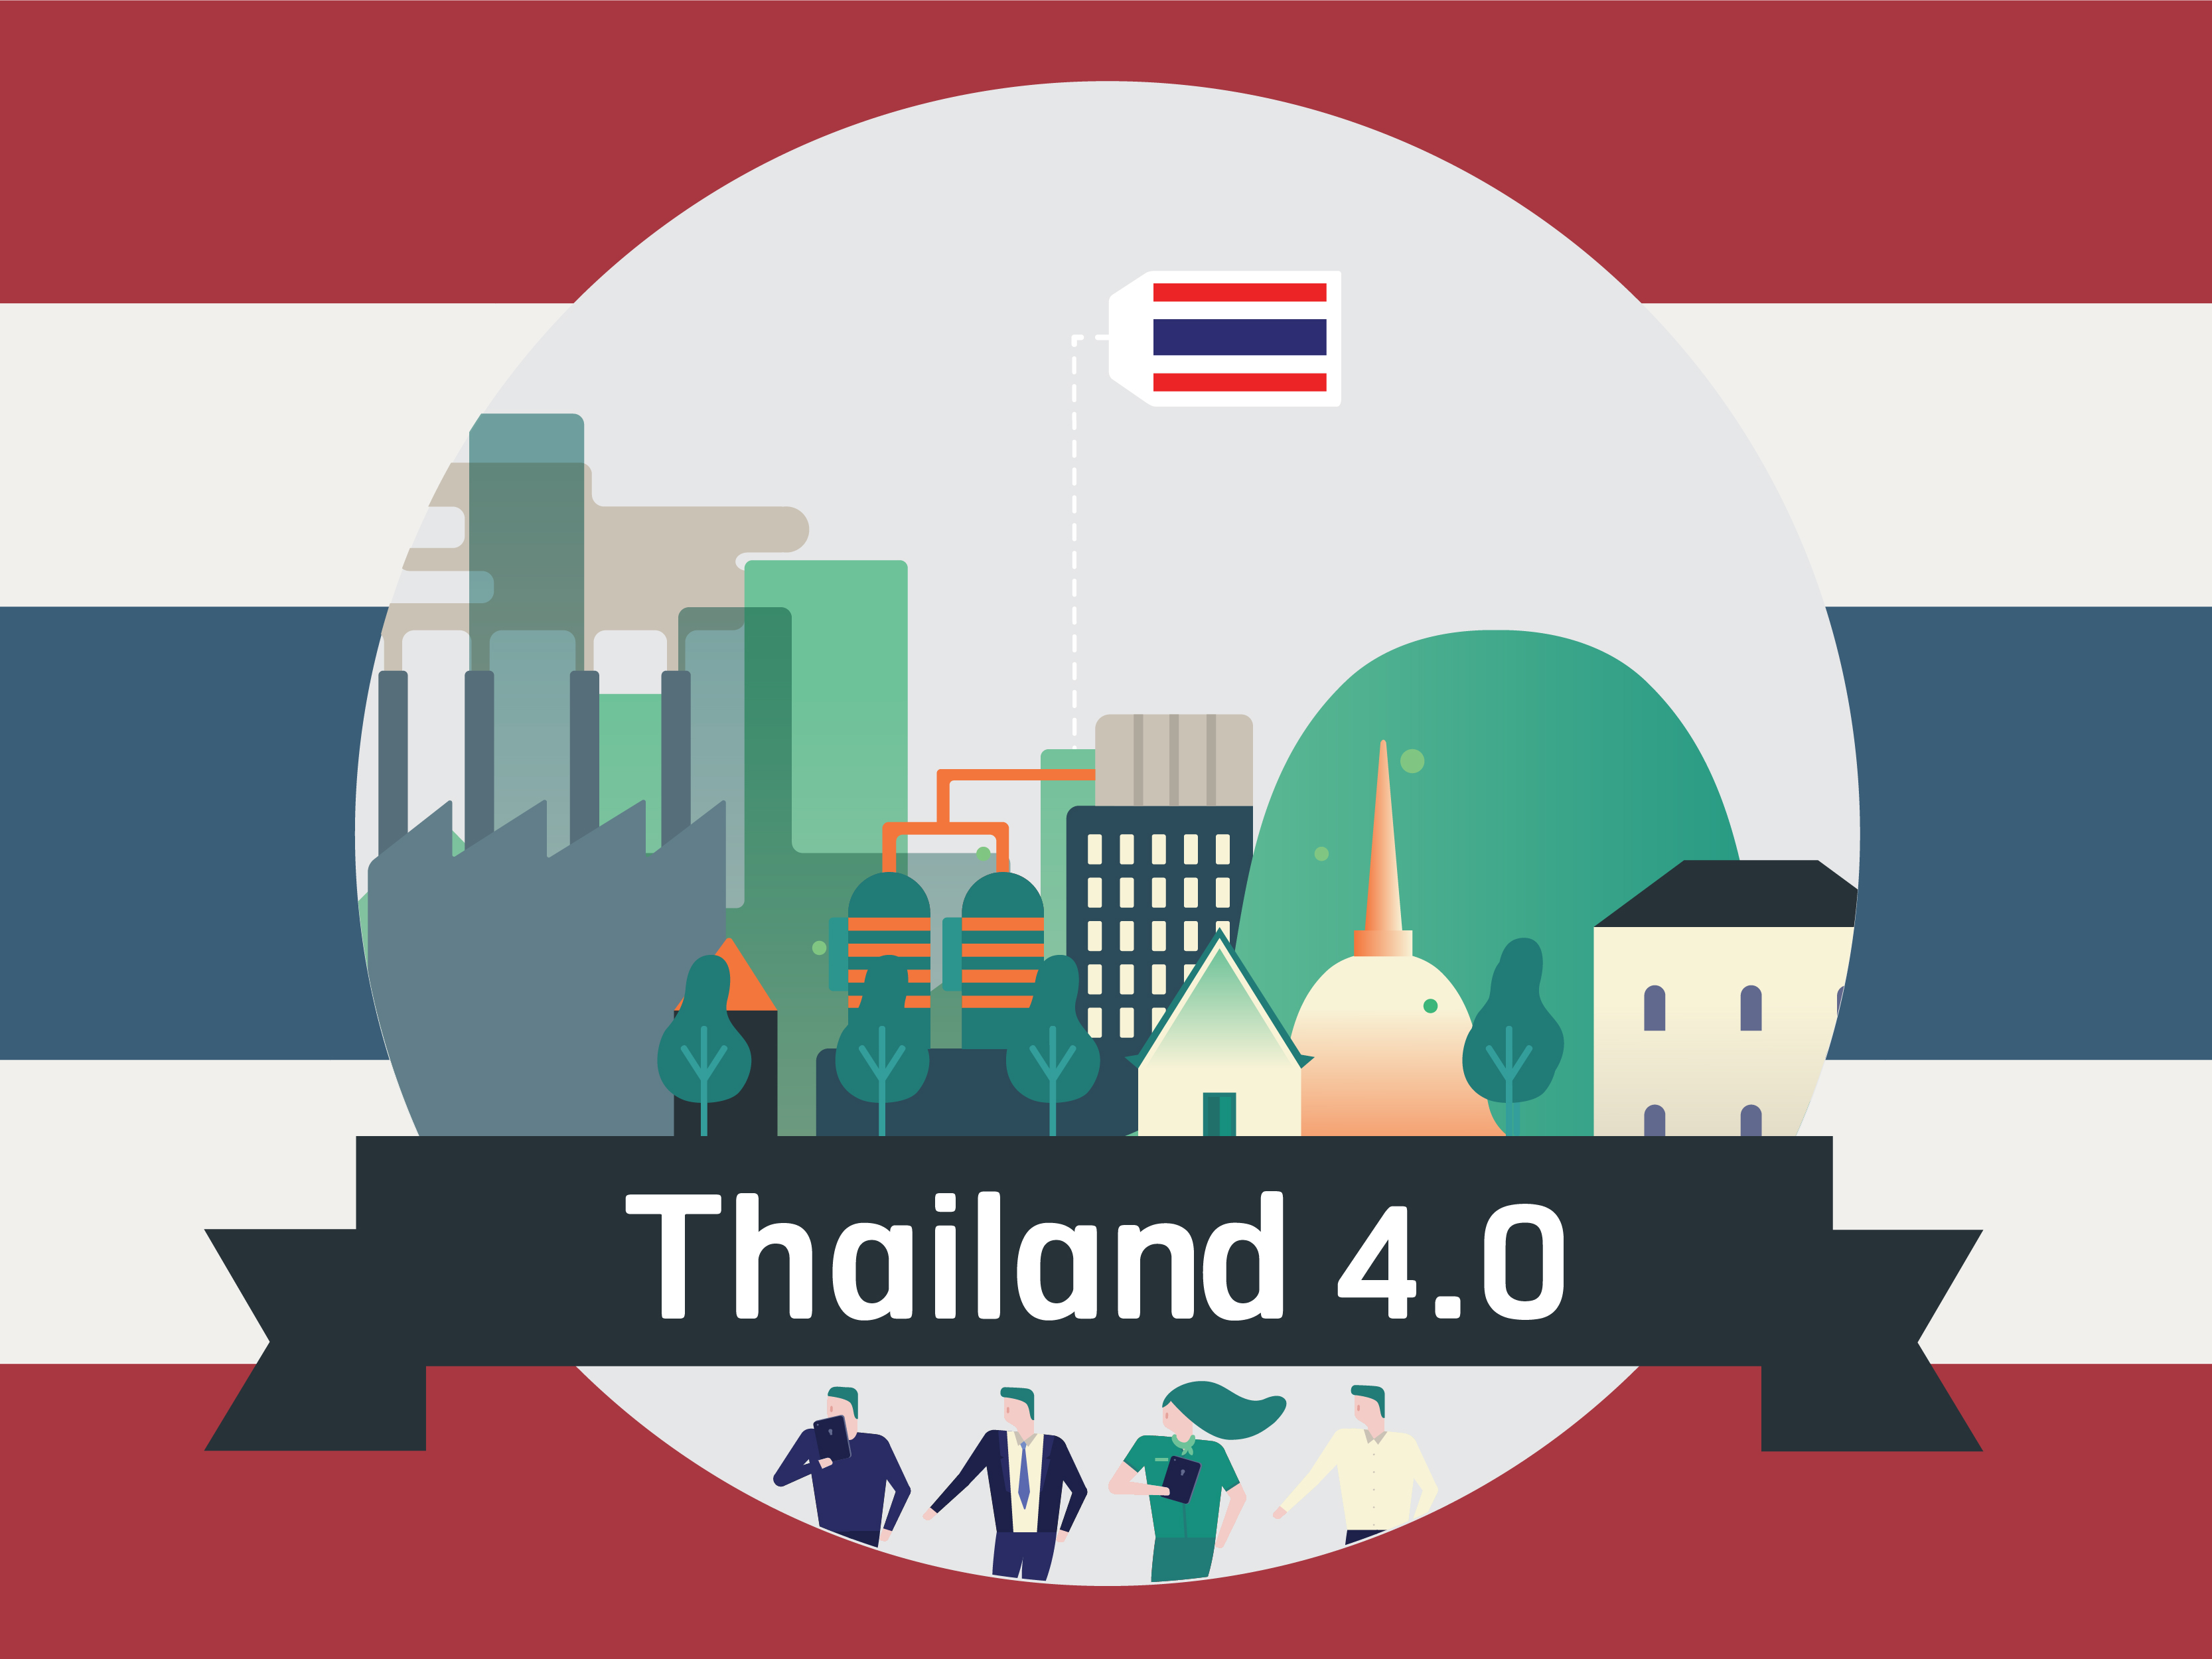 โครงการ Innovation Hubs เพื่อสร้างเศรษฐกิจฐานนวัตกรรมของประเทศตามนโยบายประเทศไทย 4.0